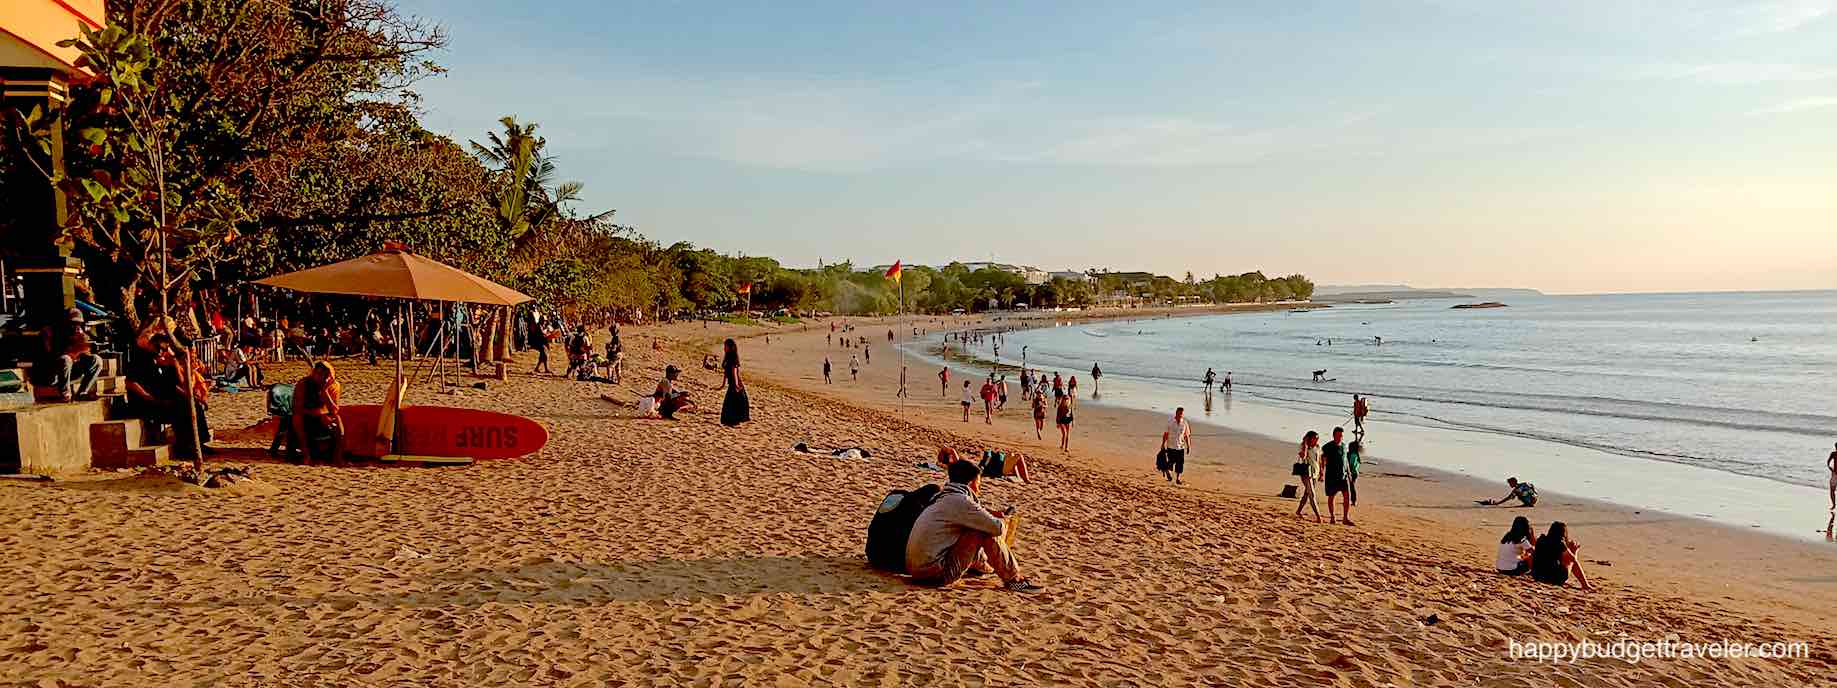 Picture of Kuta beach, Bali